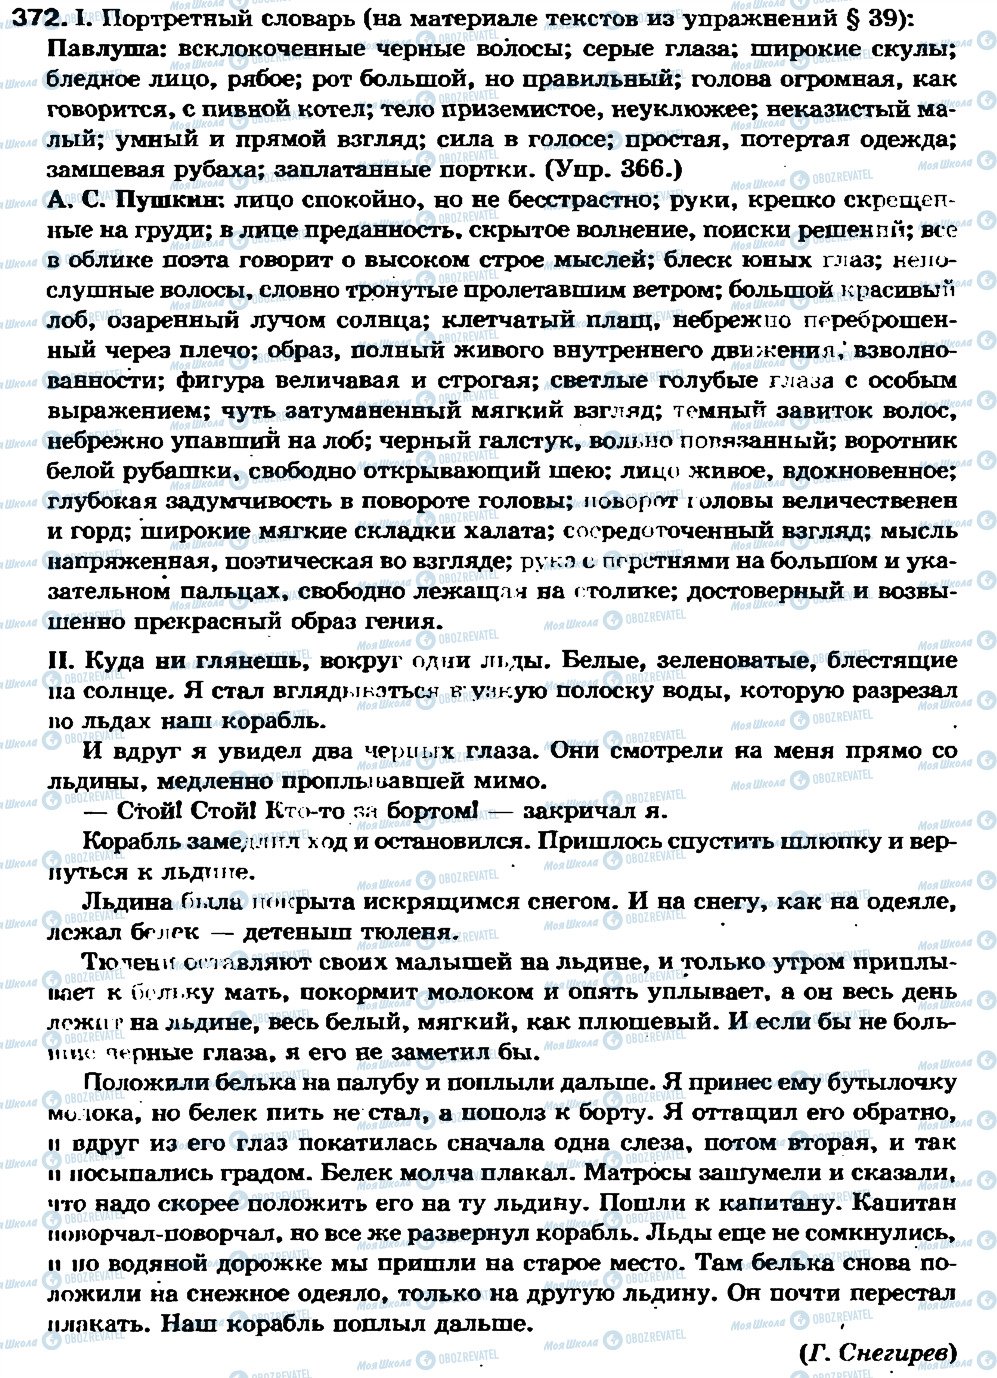 ГДЗ Російська мова 7 клас сторінка 372